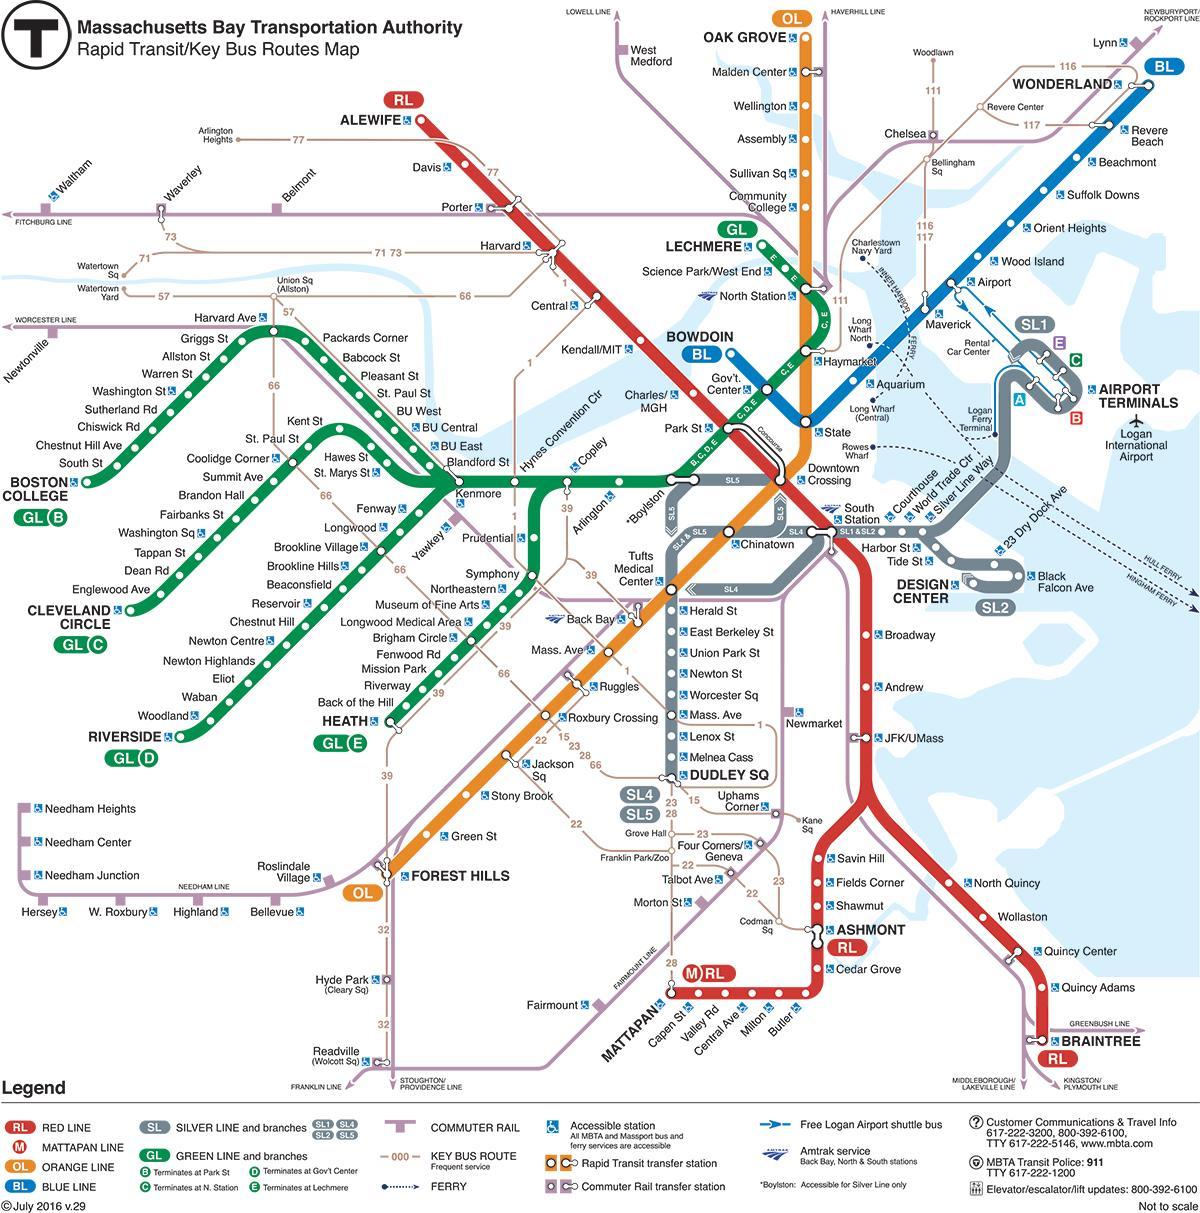 χάρτης του μετρό της Βοστώνης